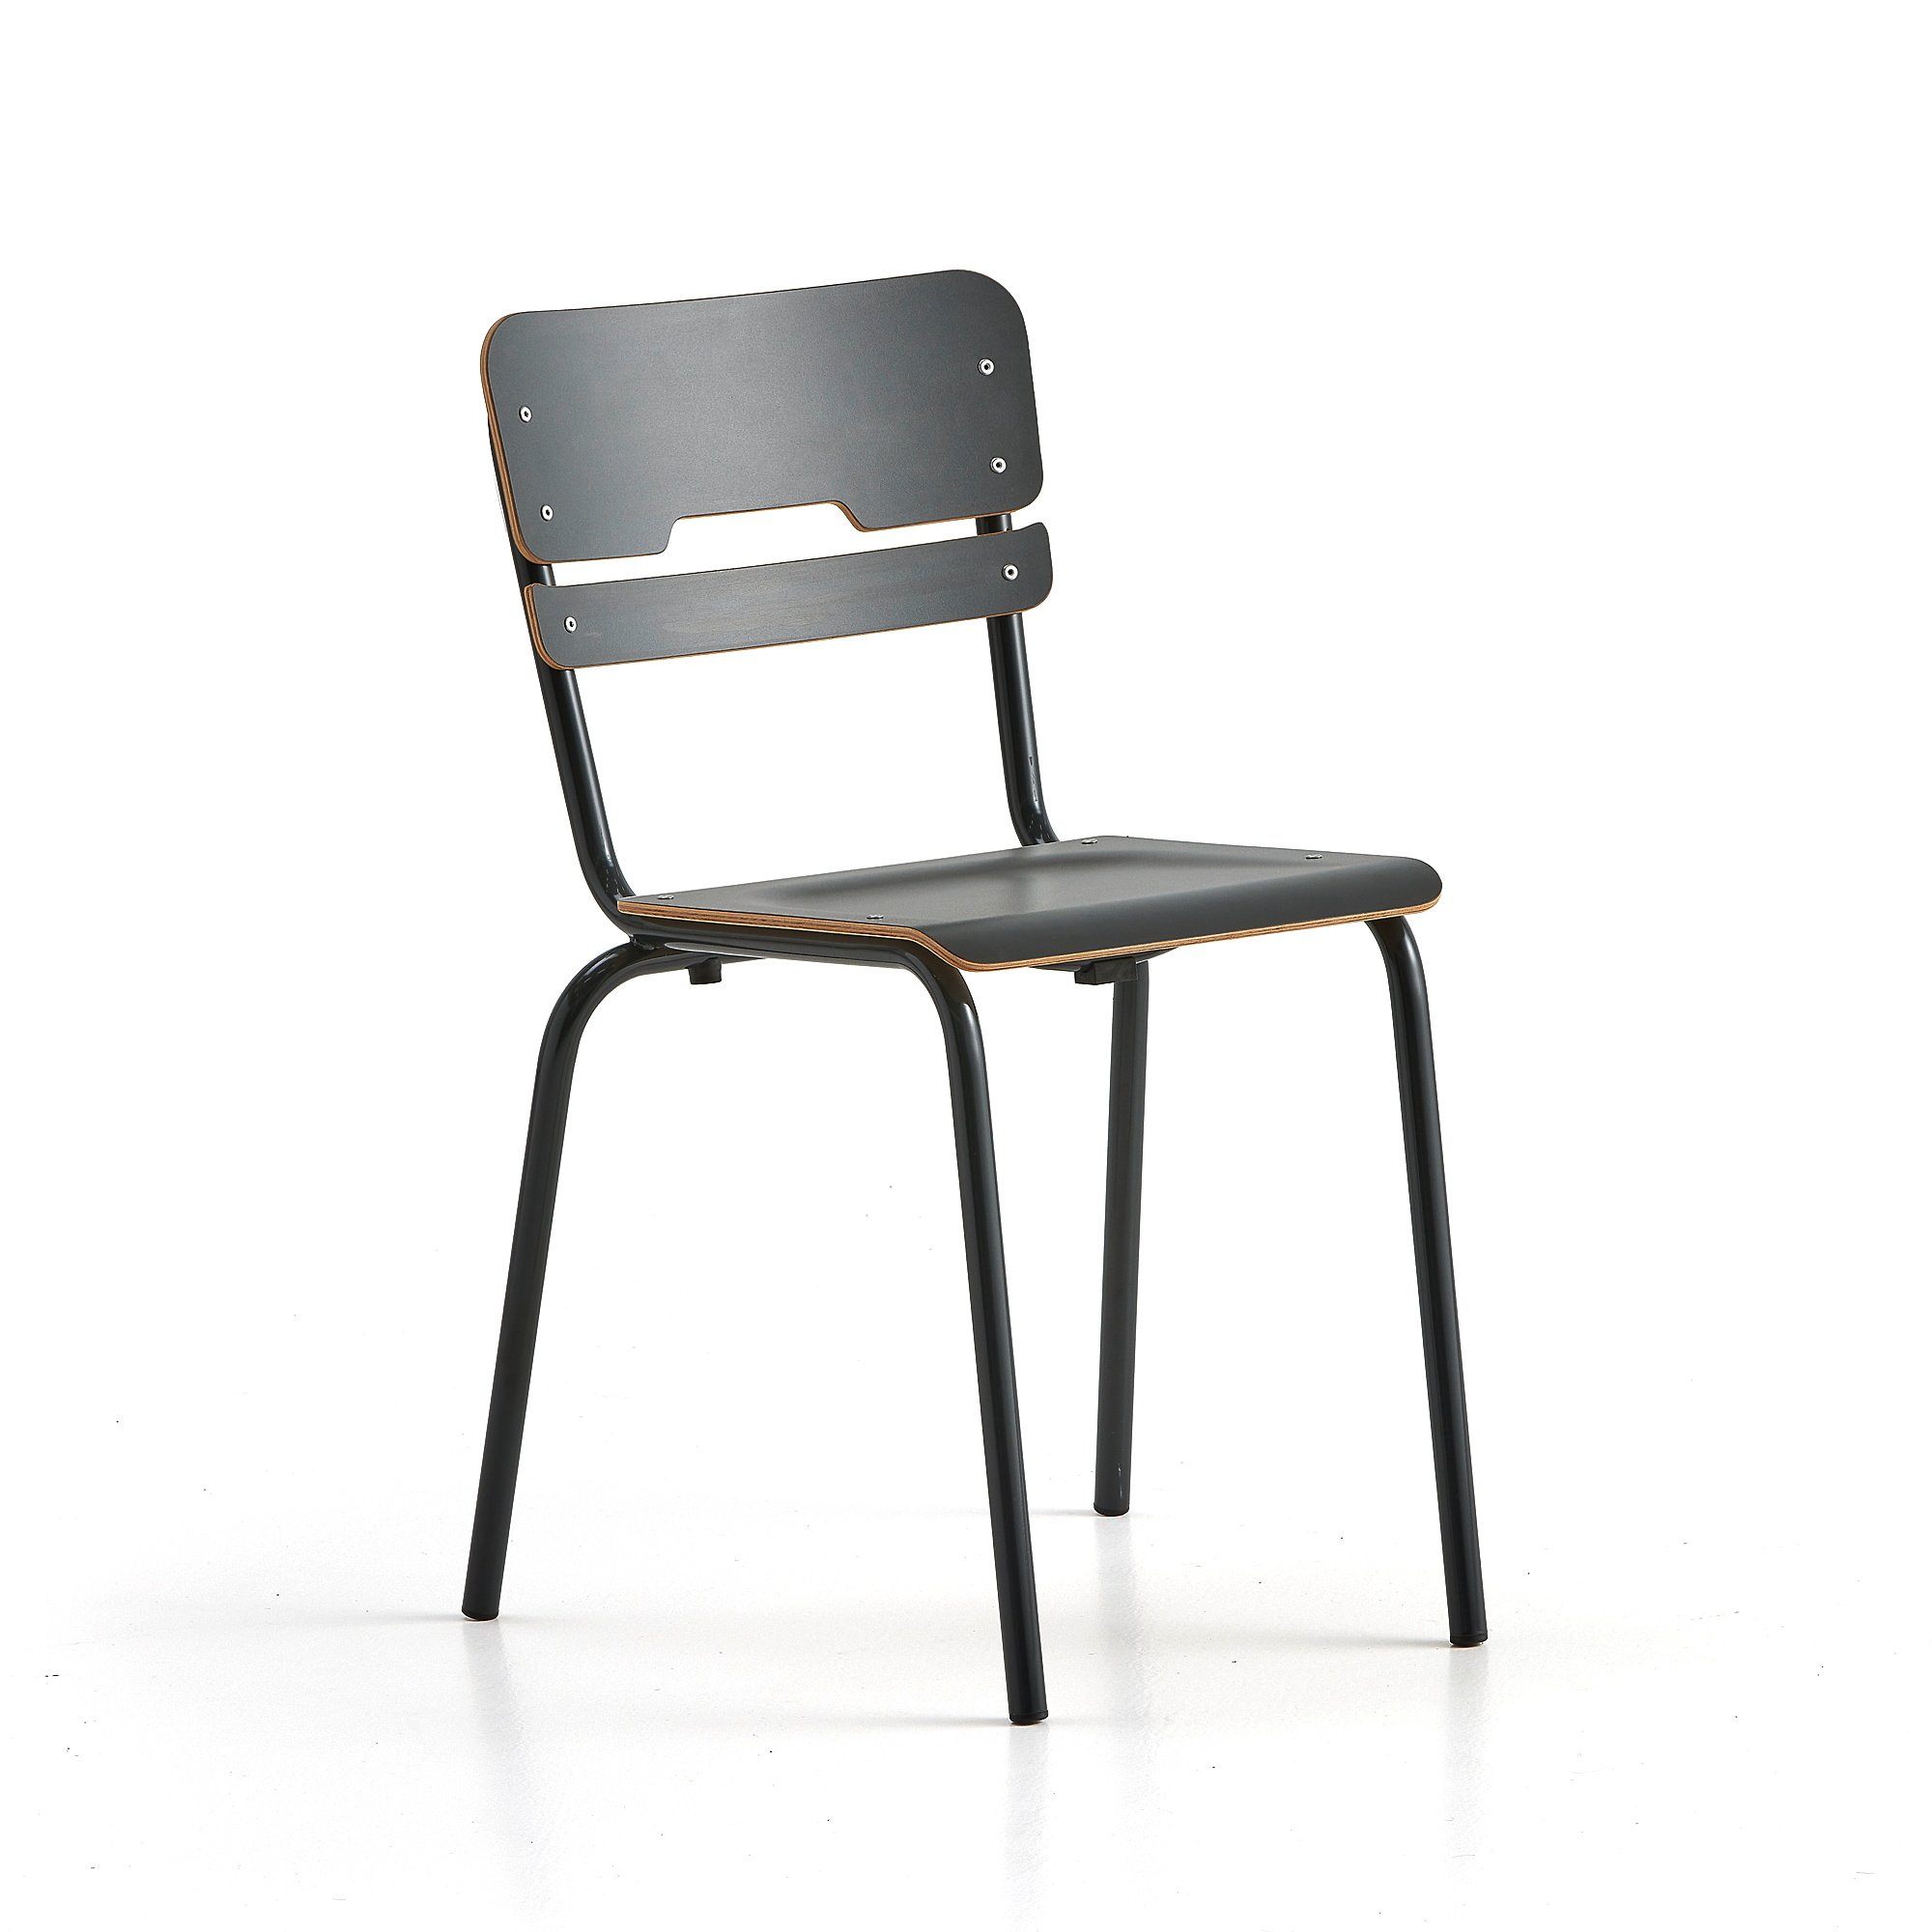 E-shop Školská stolička SCIENTIA, nízke sedadlo, V 460 mm, antracit/antracit